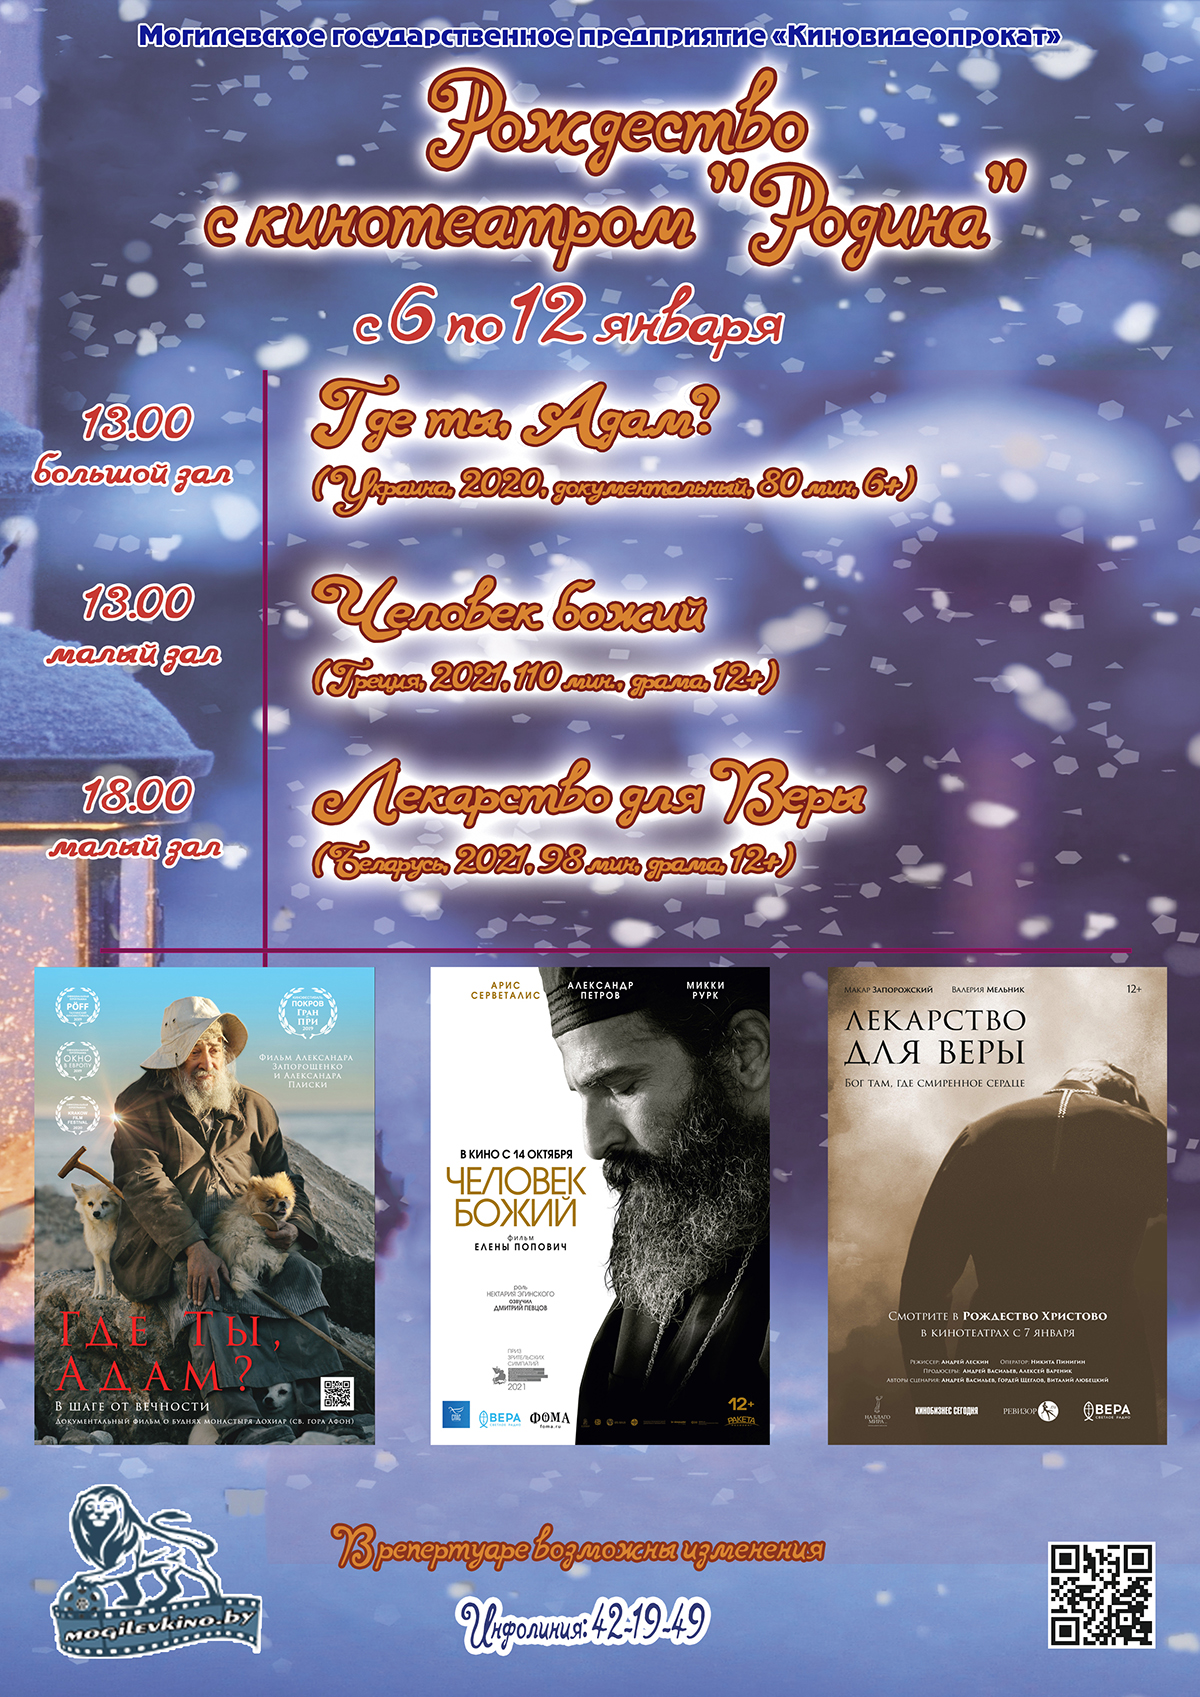 Рождественские встречи пройдут в могилевском кинотеатре «Родина» с 6 по 12 января